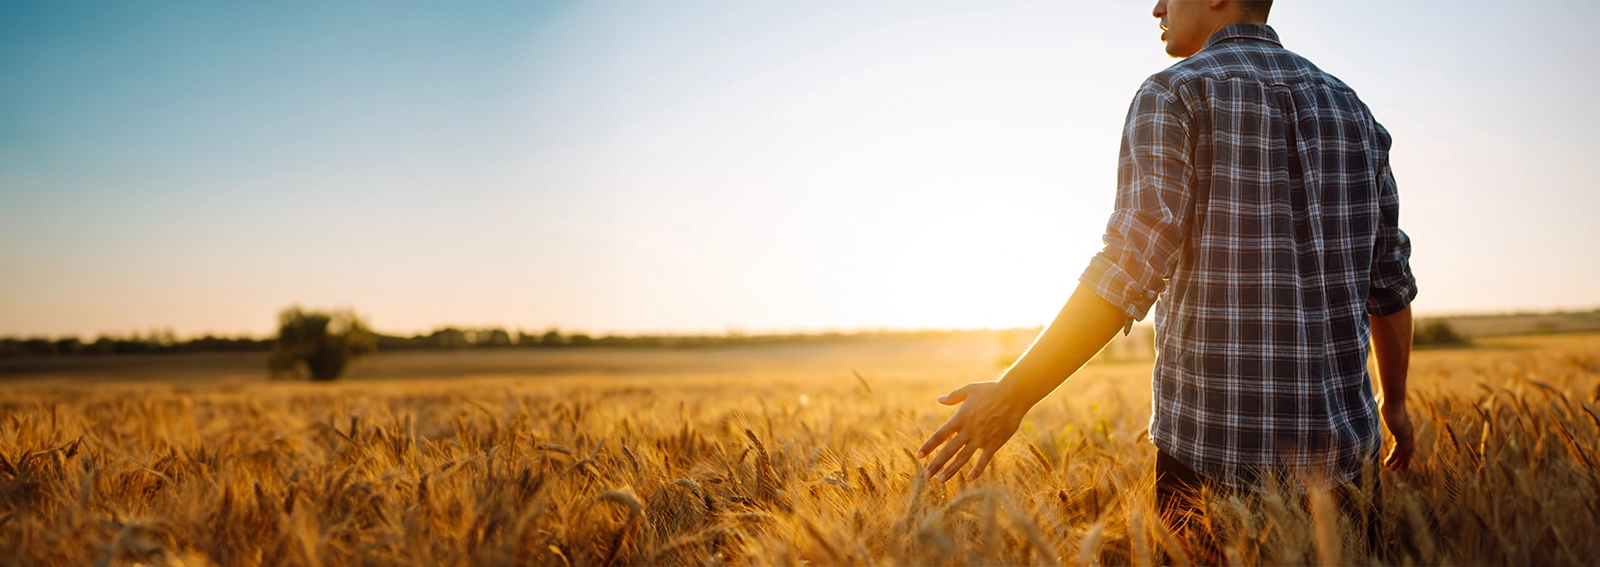 personne debout dans un champ agricole avec les rayons du soleil frappant ses bras ouverts